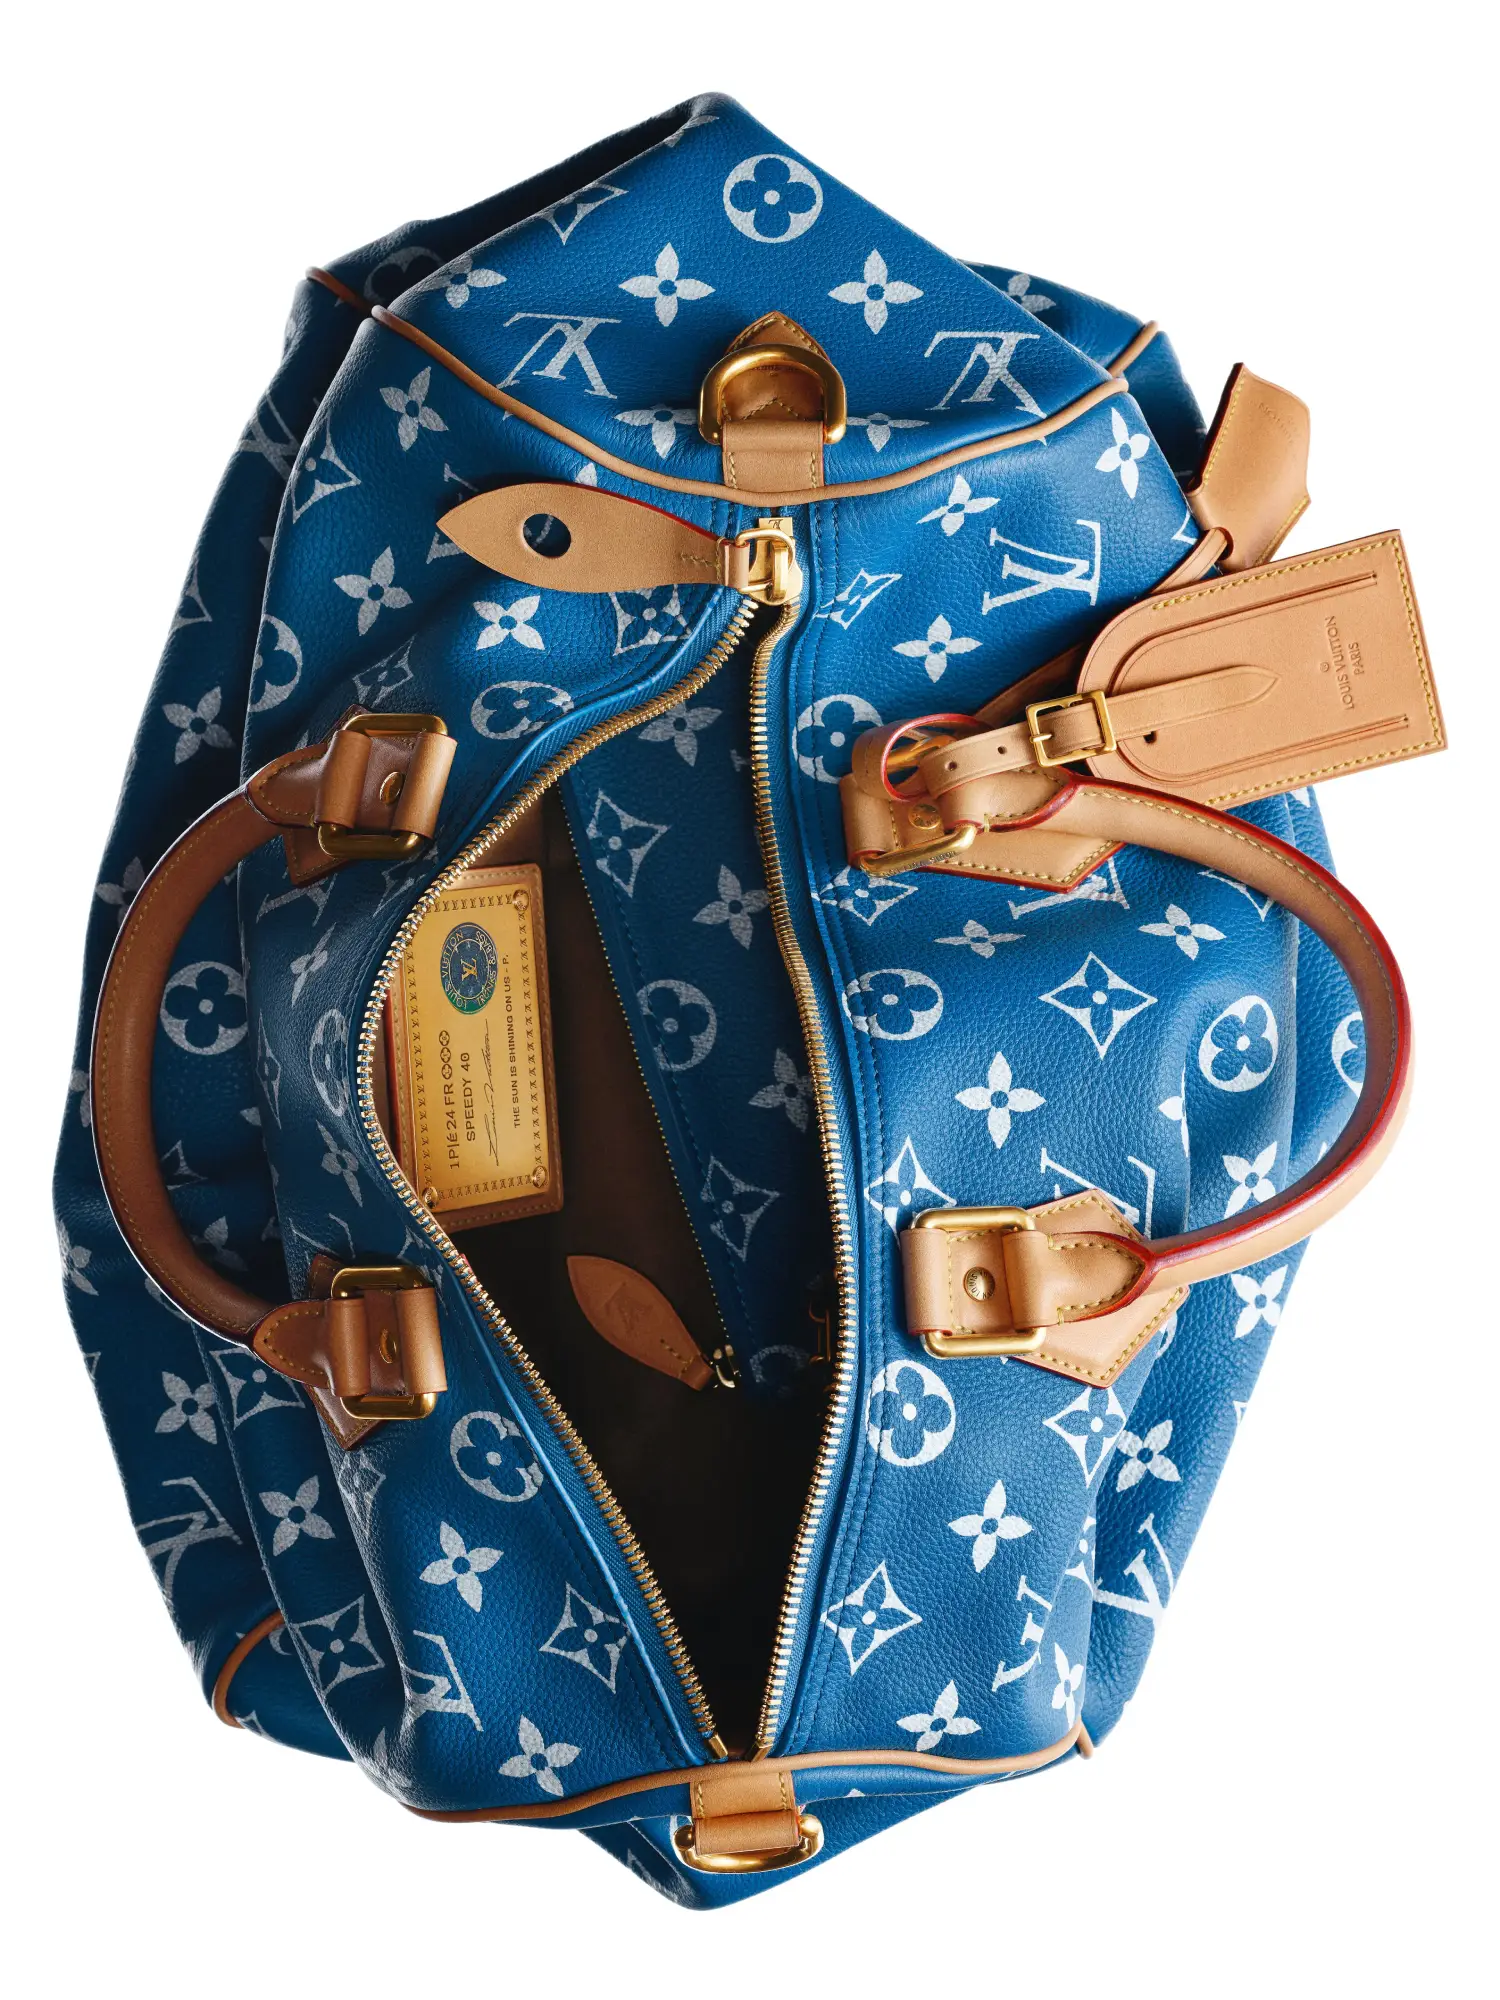 Diện mạo mới cho túi Louis Vuitton Speedy huyền thoại, theo ý tưởng của Pharrell Willams